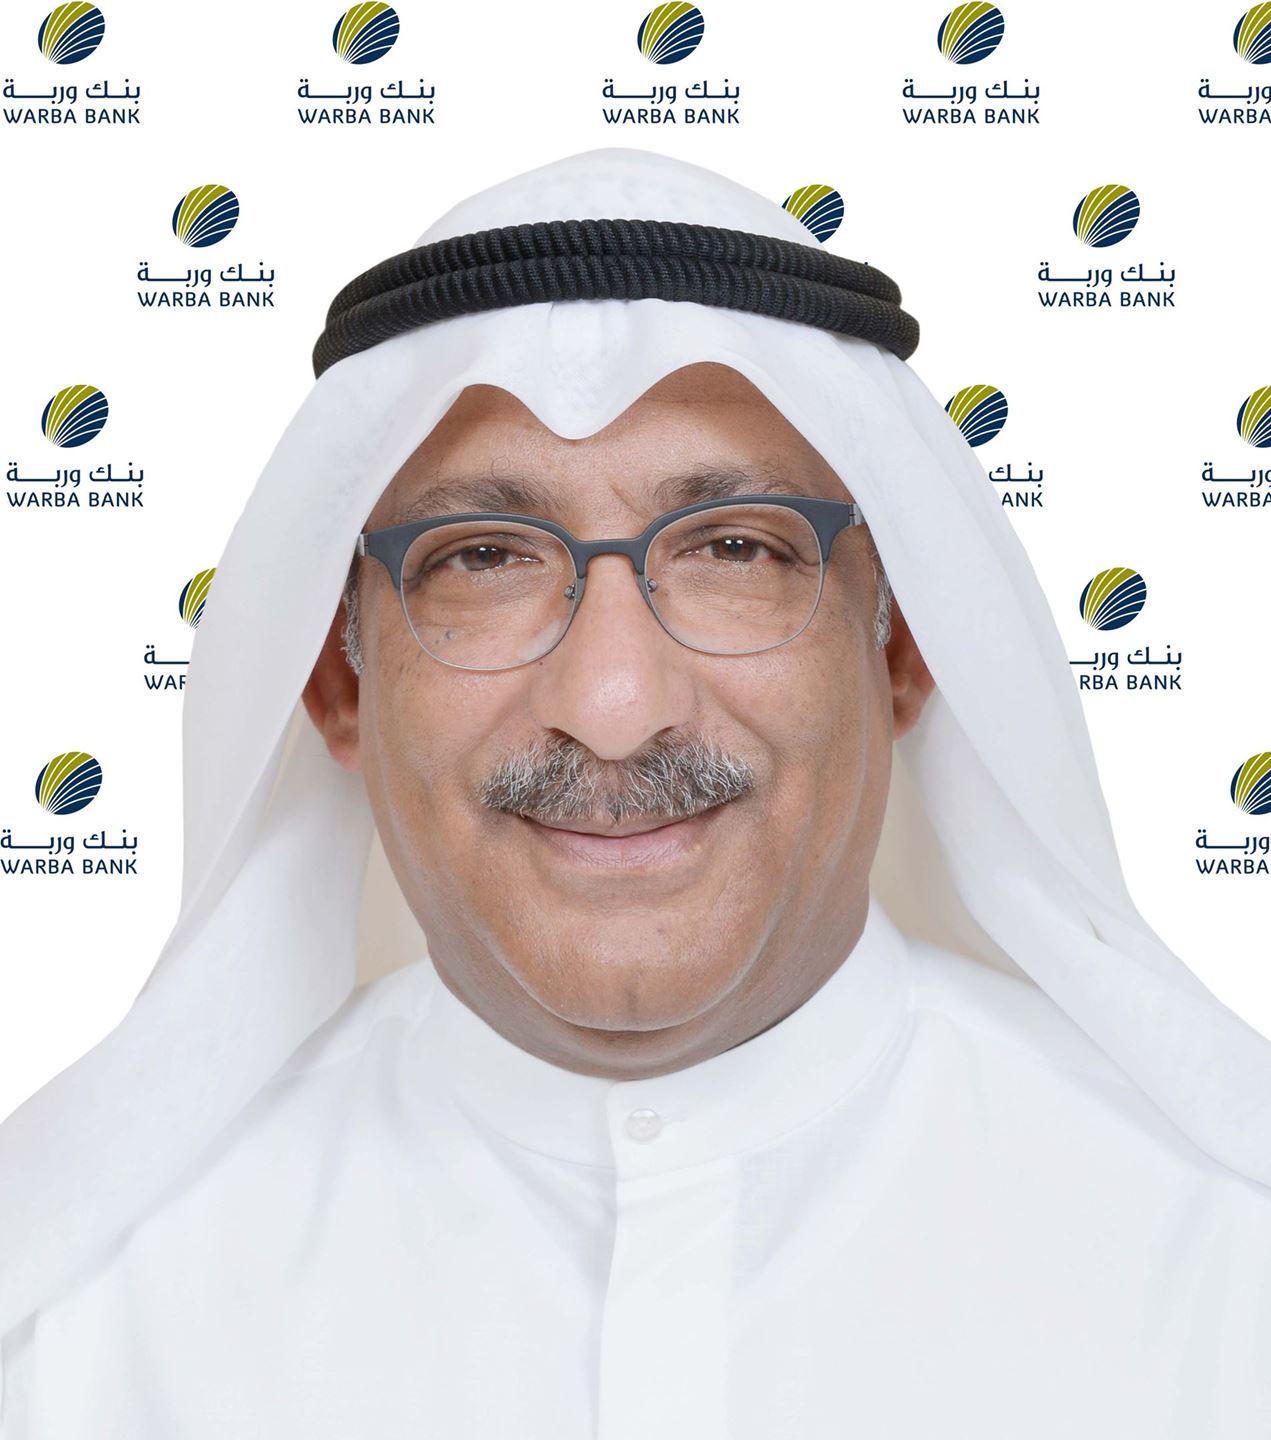 السيد هيثم عبدالعزيز التركيت ، رئيس مجموعة تكنولوجيا المعلومات في بنك وربة